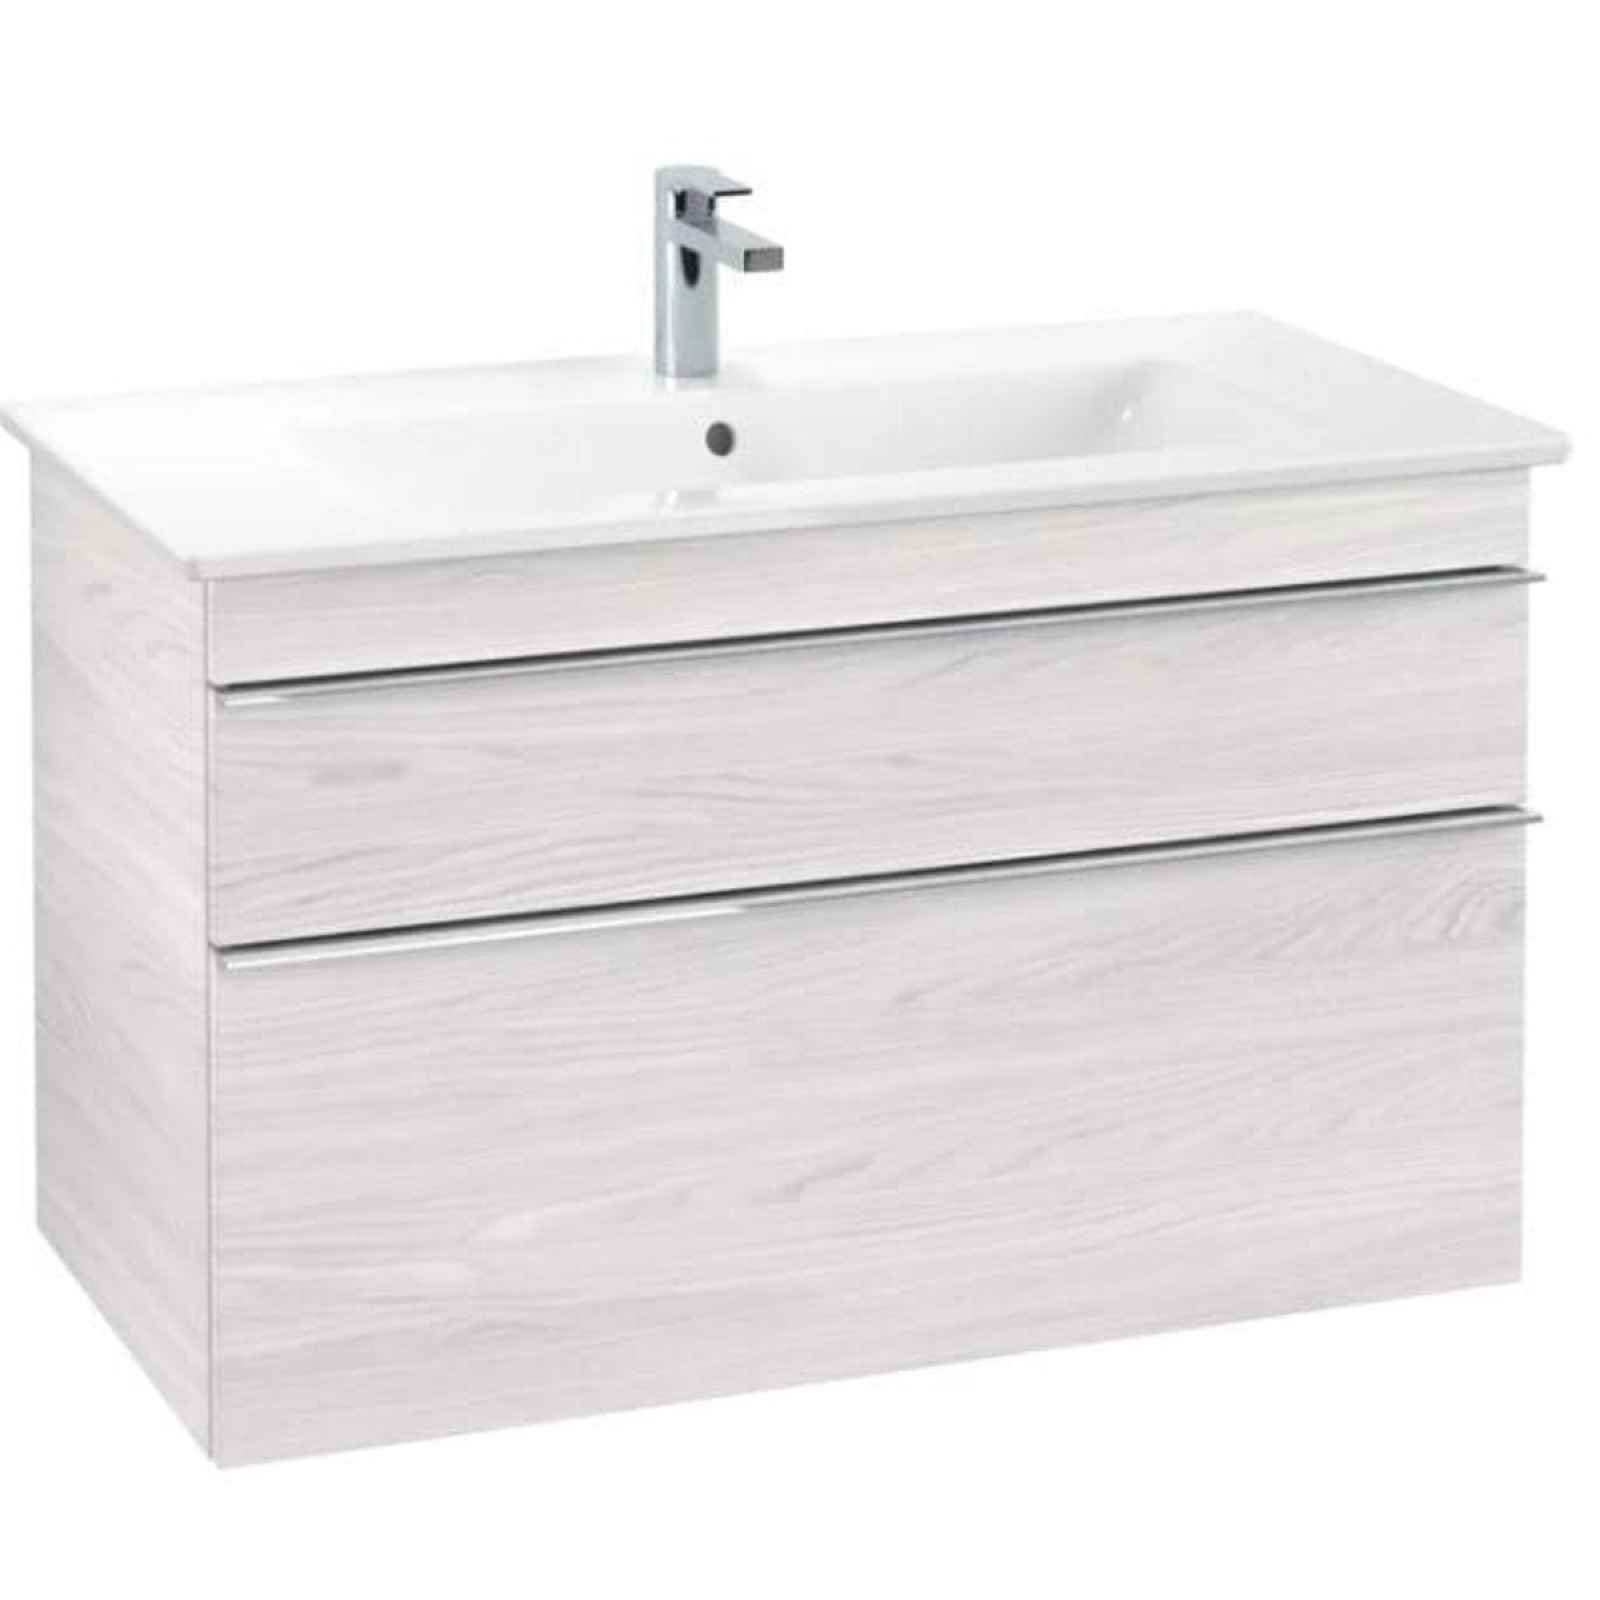 Koupelnová skříňka pod umyvadlo Villeroy&Boch Venticello 95x59x48 cm bílá A92601E8